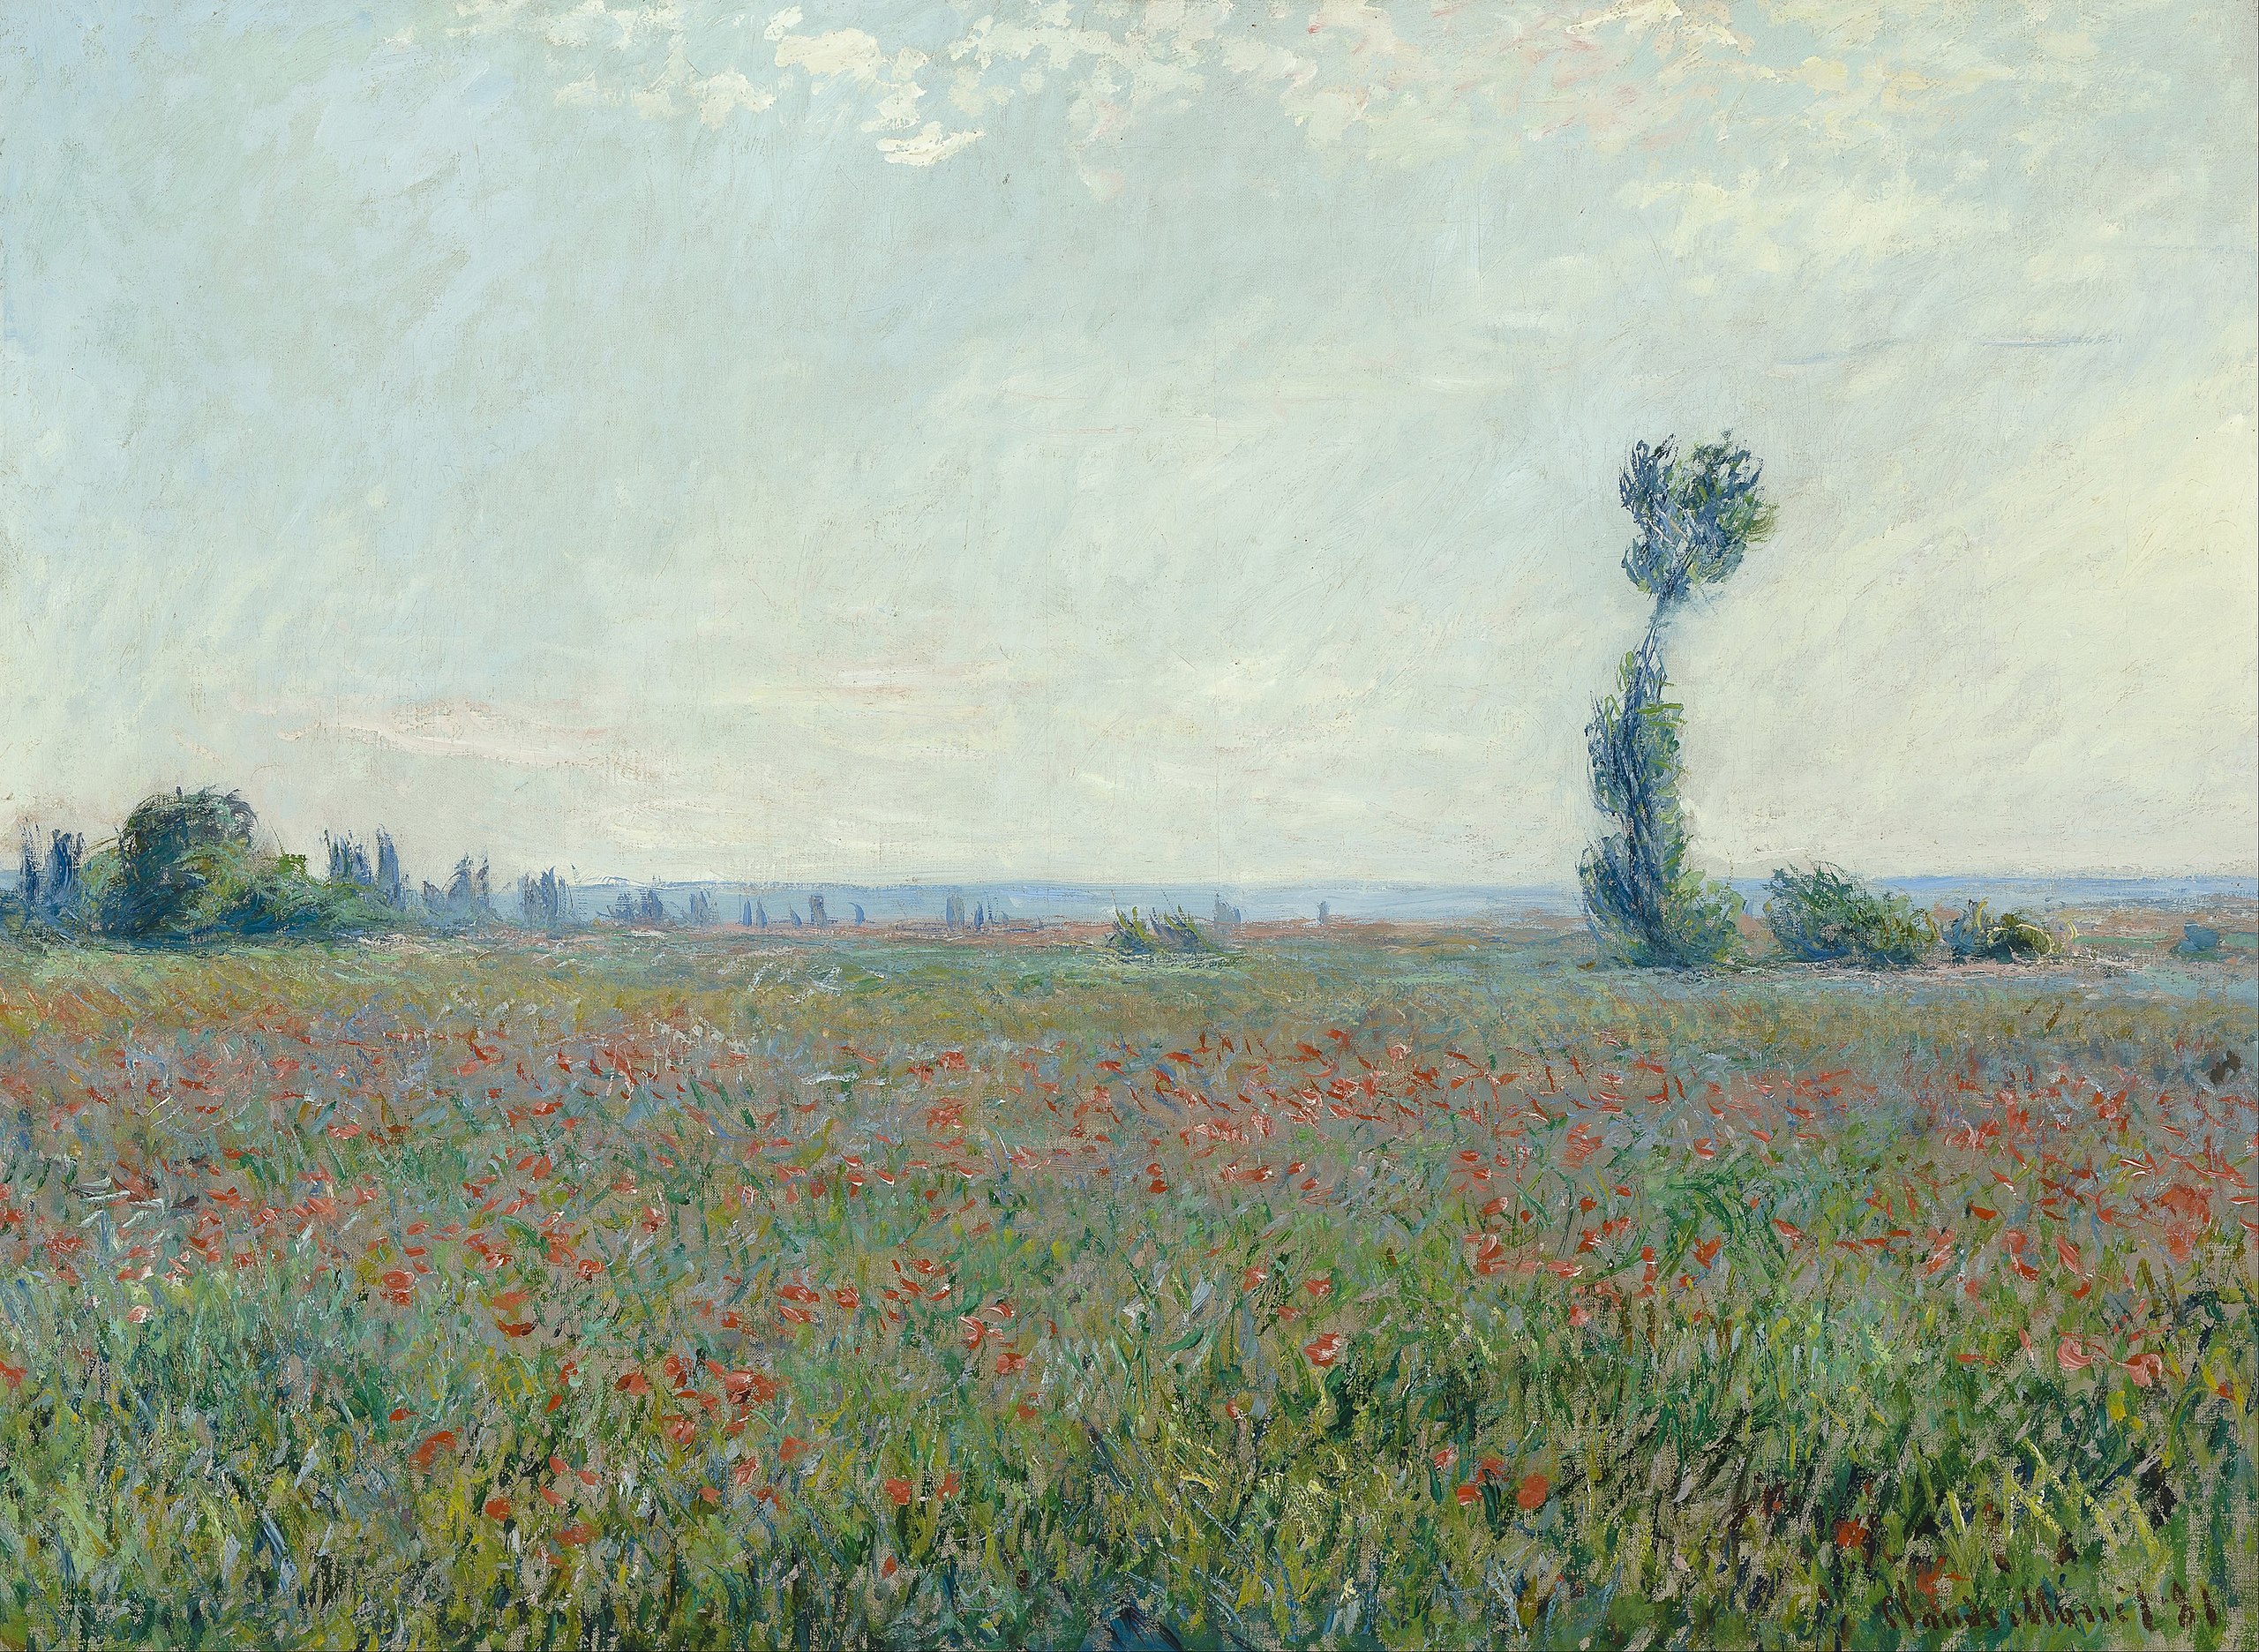 Poppy Field by Claude Monet - 1881 - 79 x 58 cm Museum Boijmans Van Beuningen